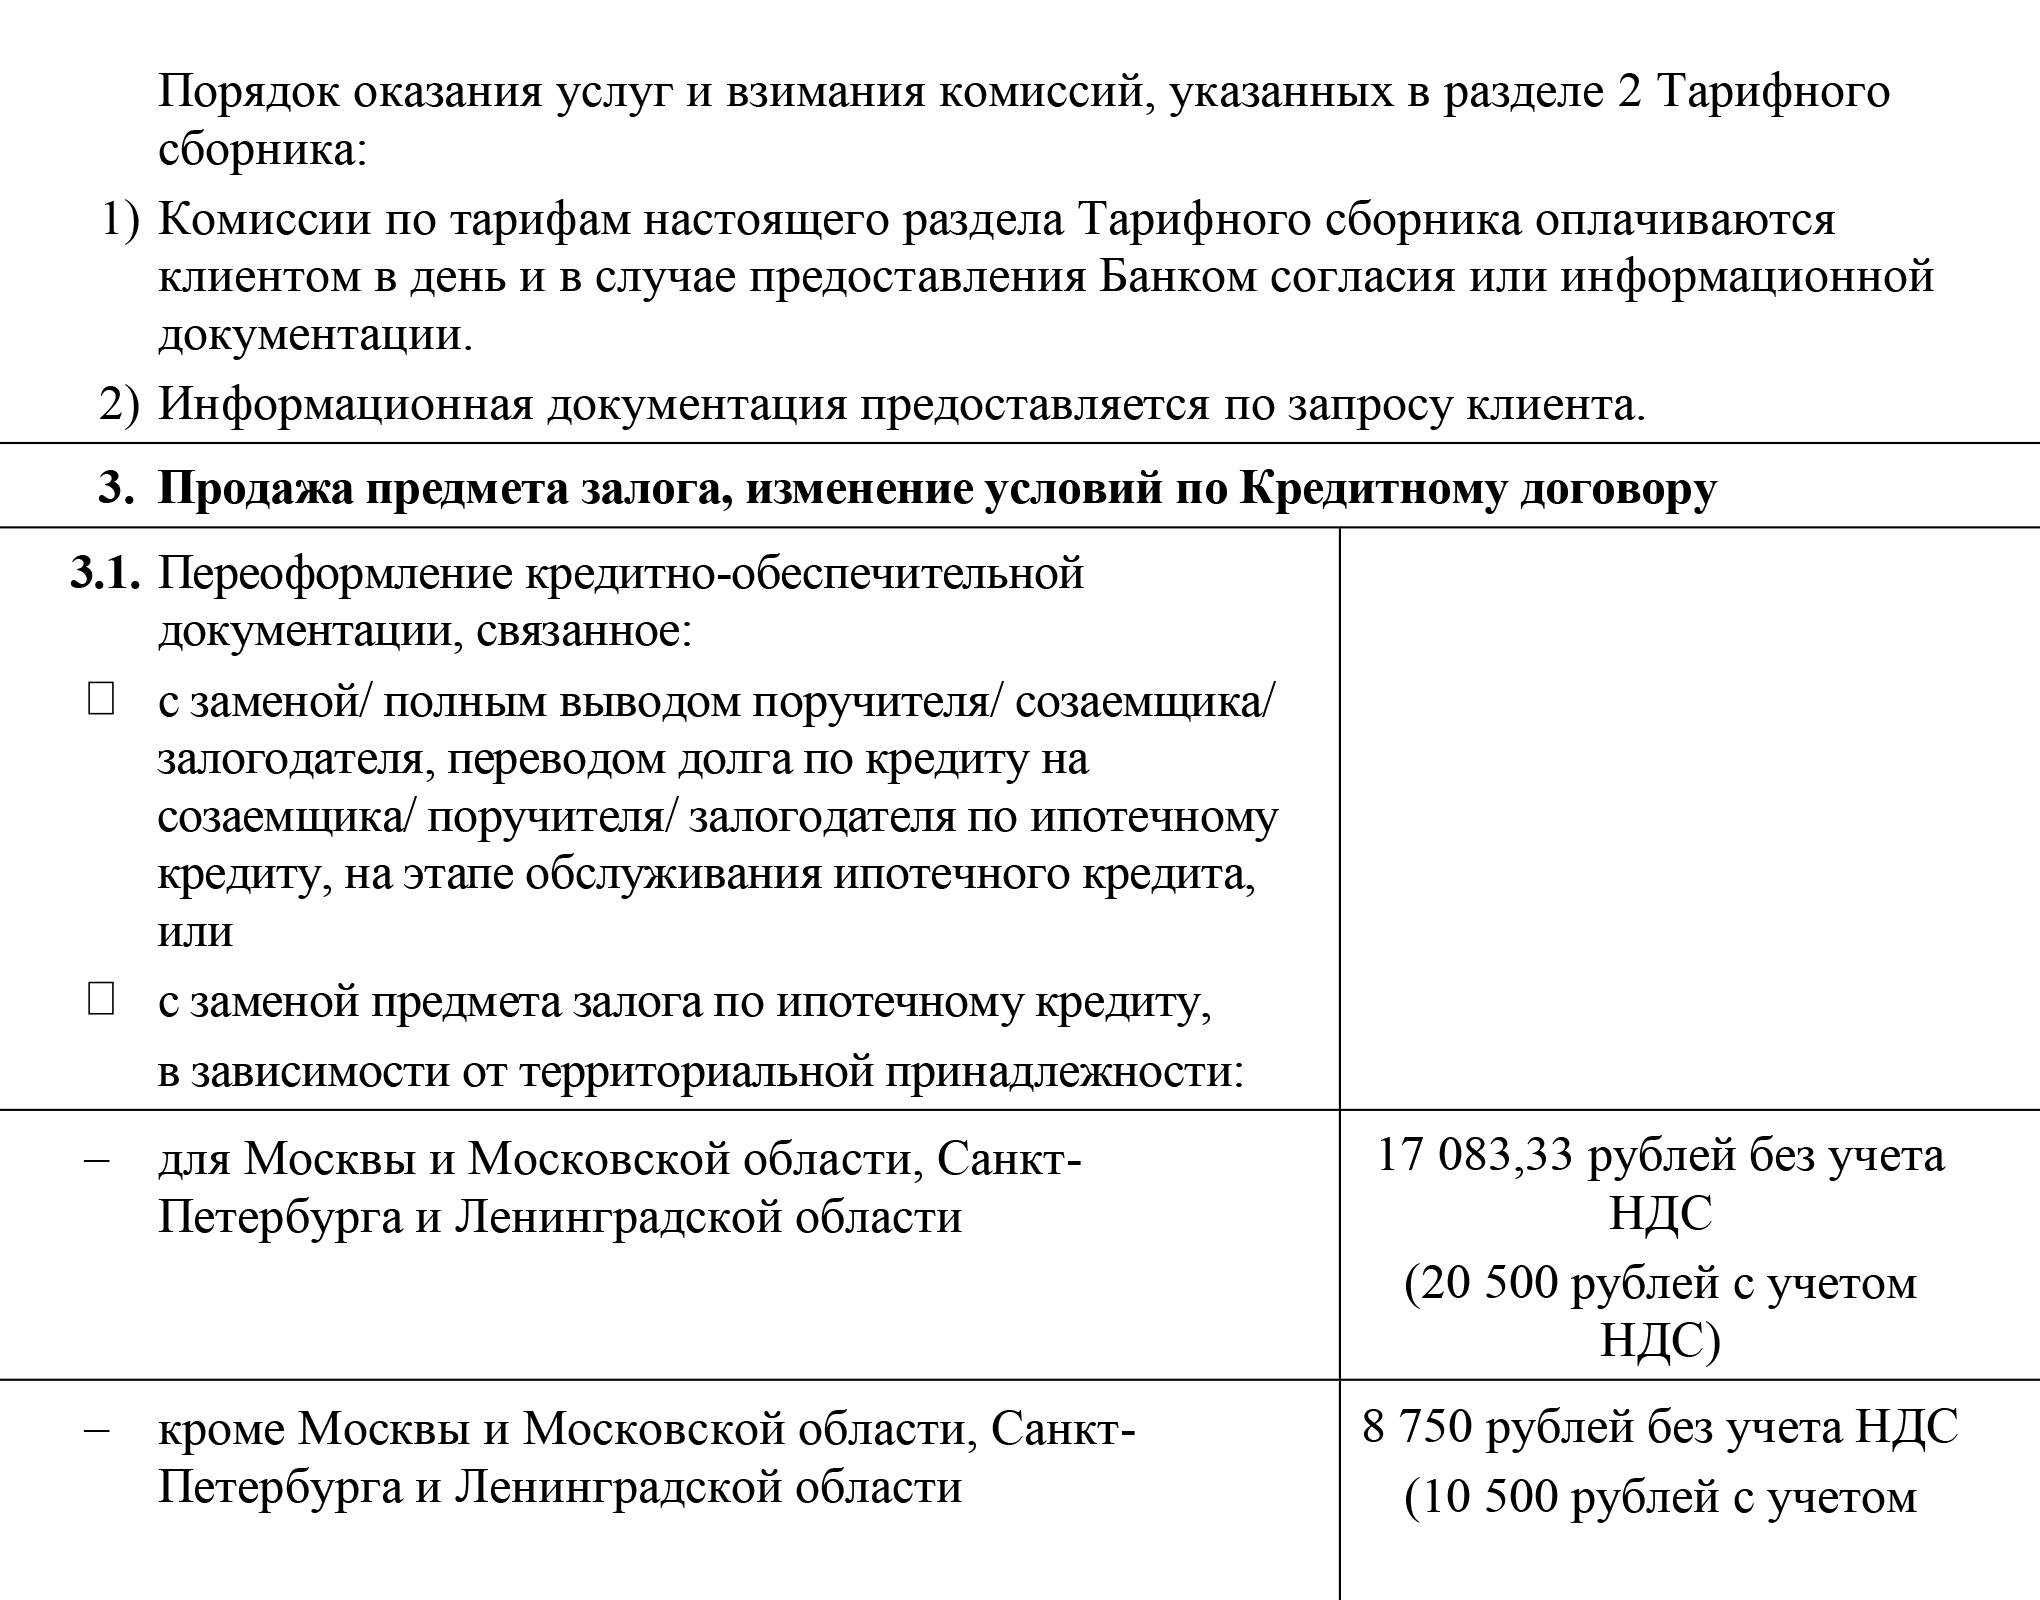 На сайте одного из банков указаны тарифы на внесение изменений в кредитно-обеспечительную документацию: 20 500 ₽ для Москвы, Санкт-Петербурга и их областей, а для регионов — 10 500 ₽. Источник: alfabank.gcdn.com